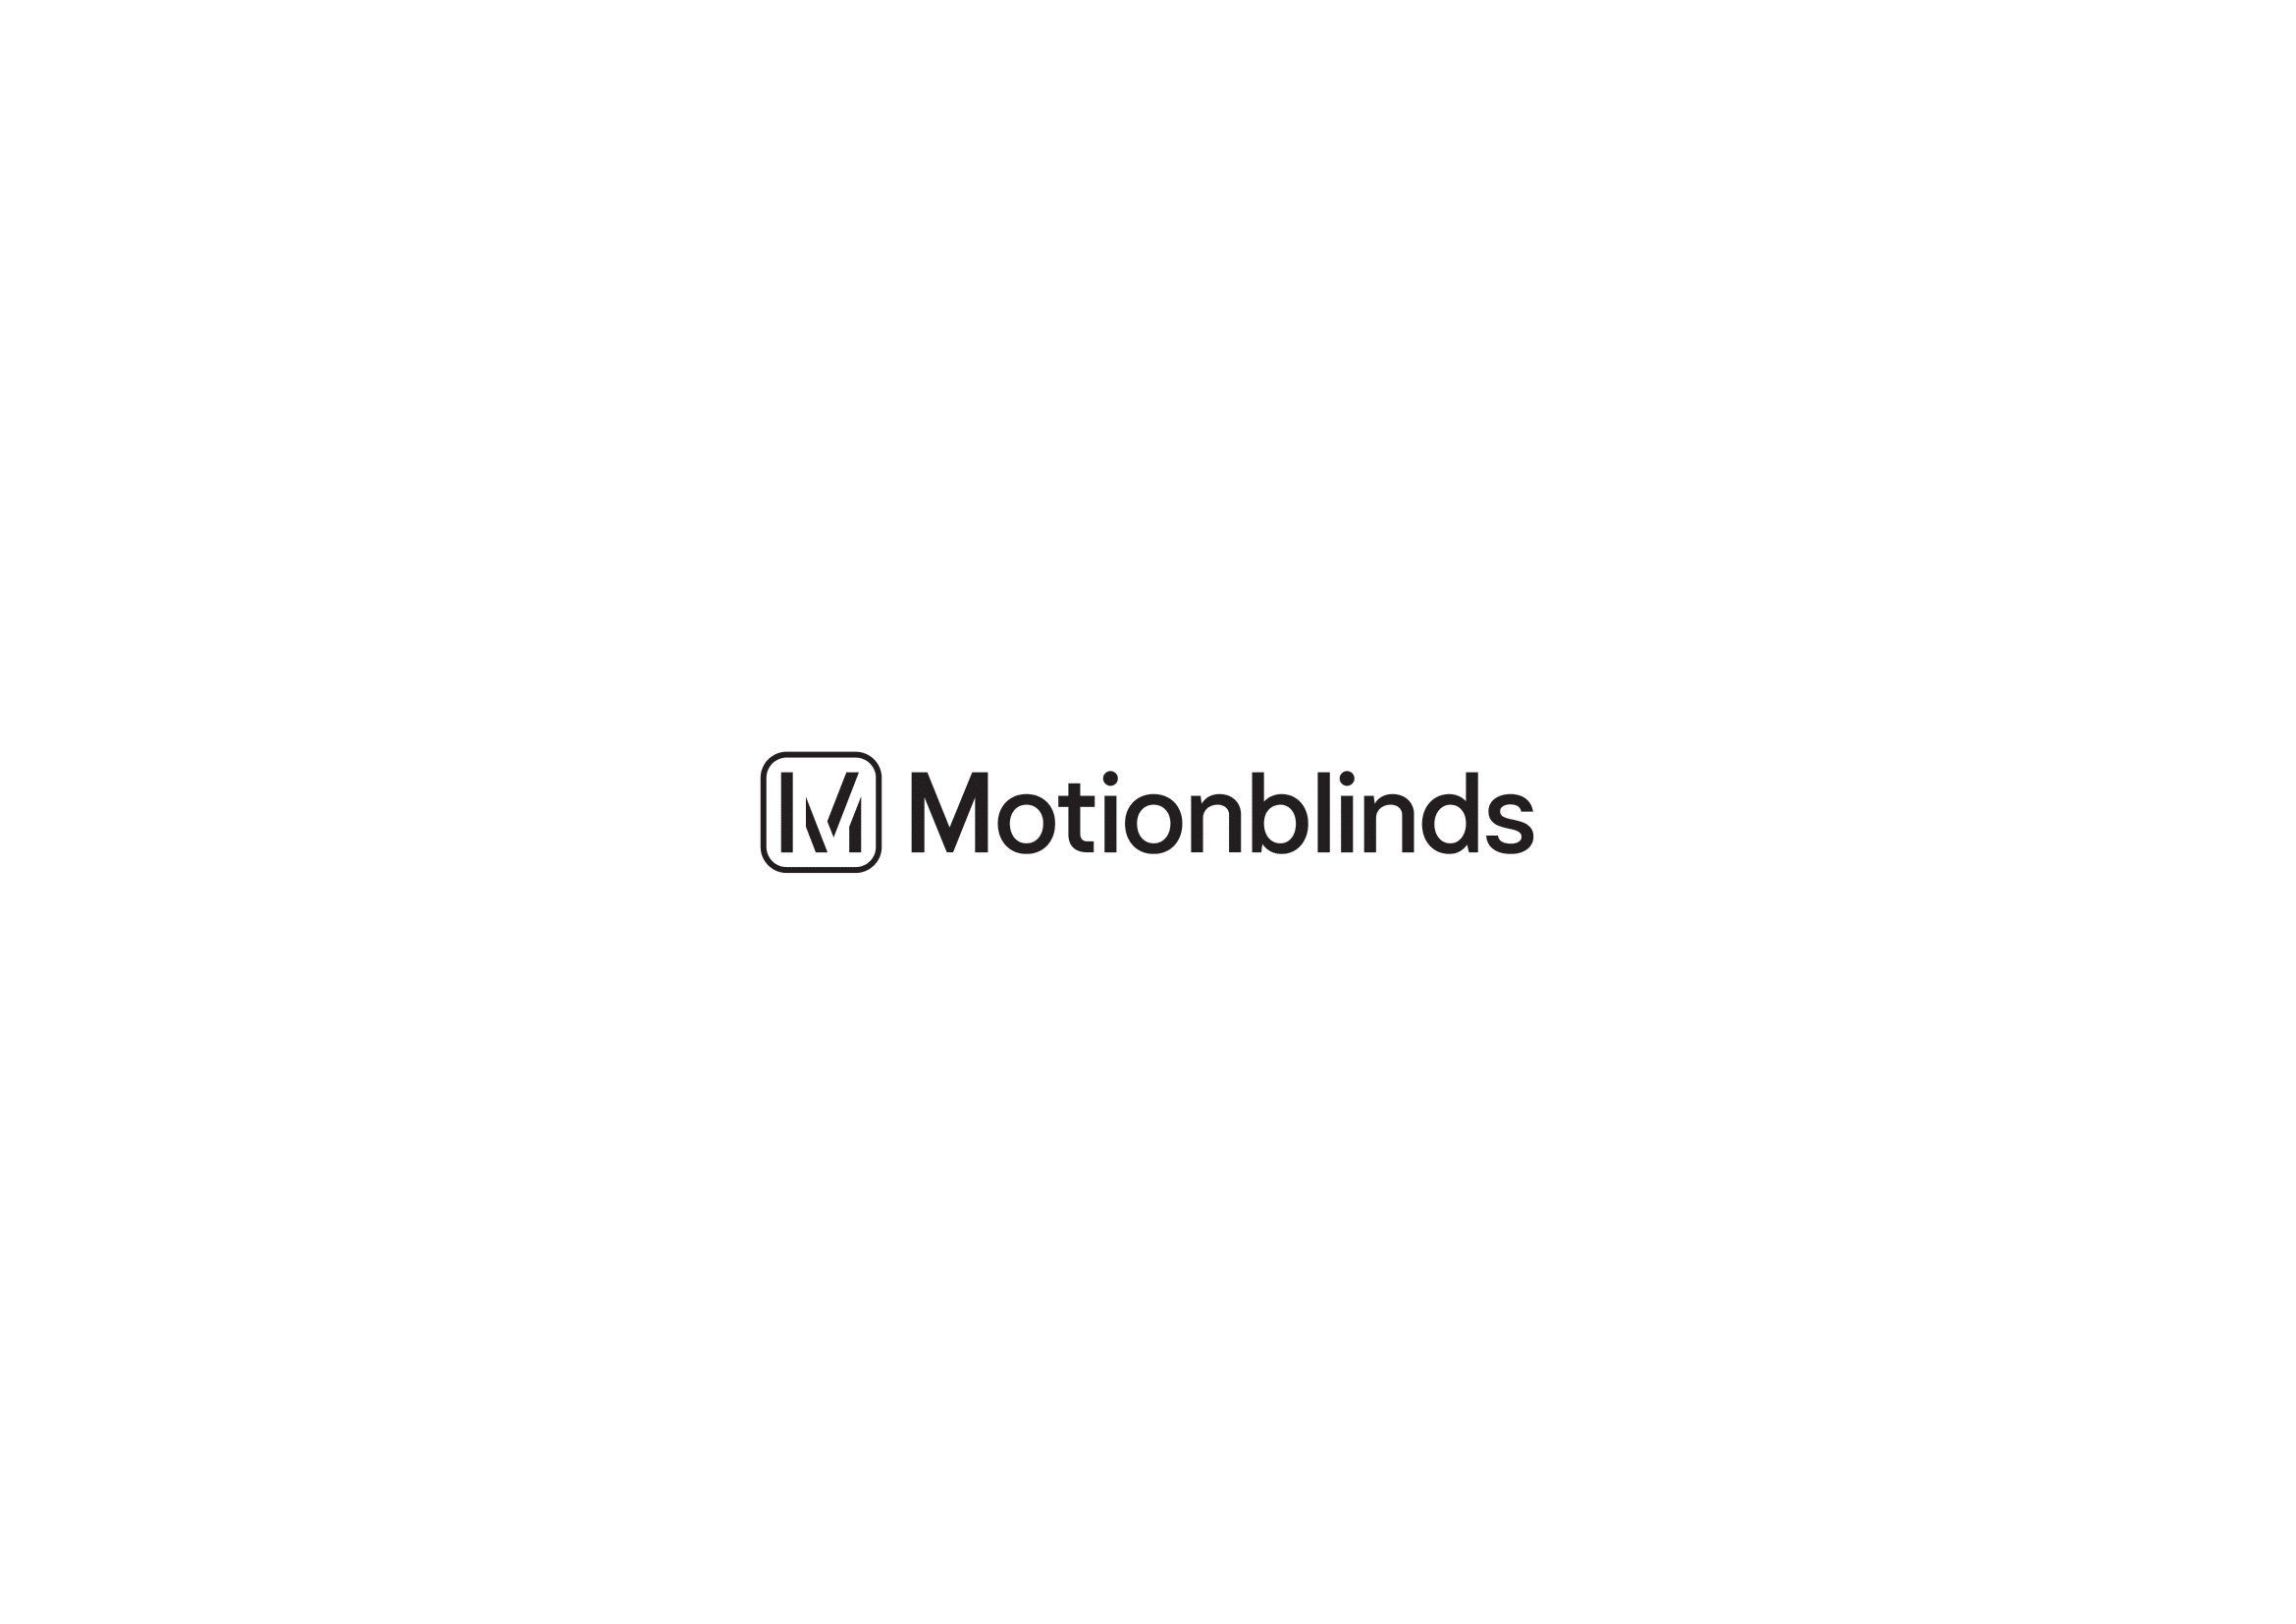 Motionblinds